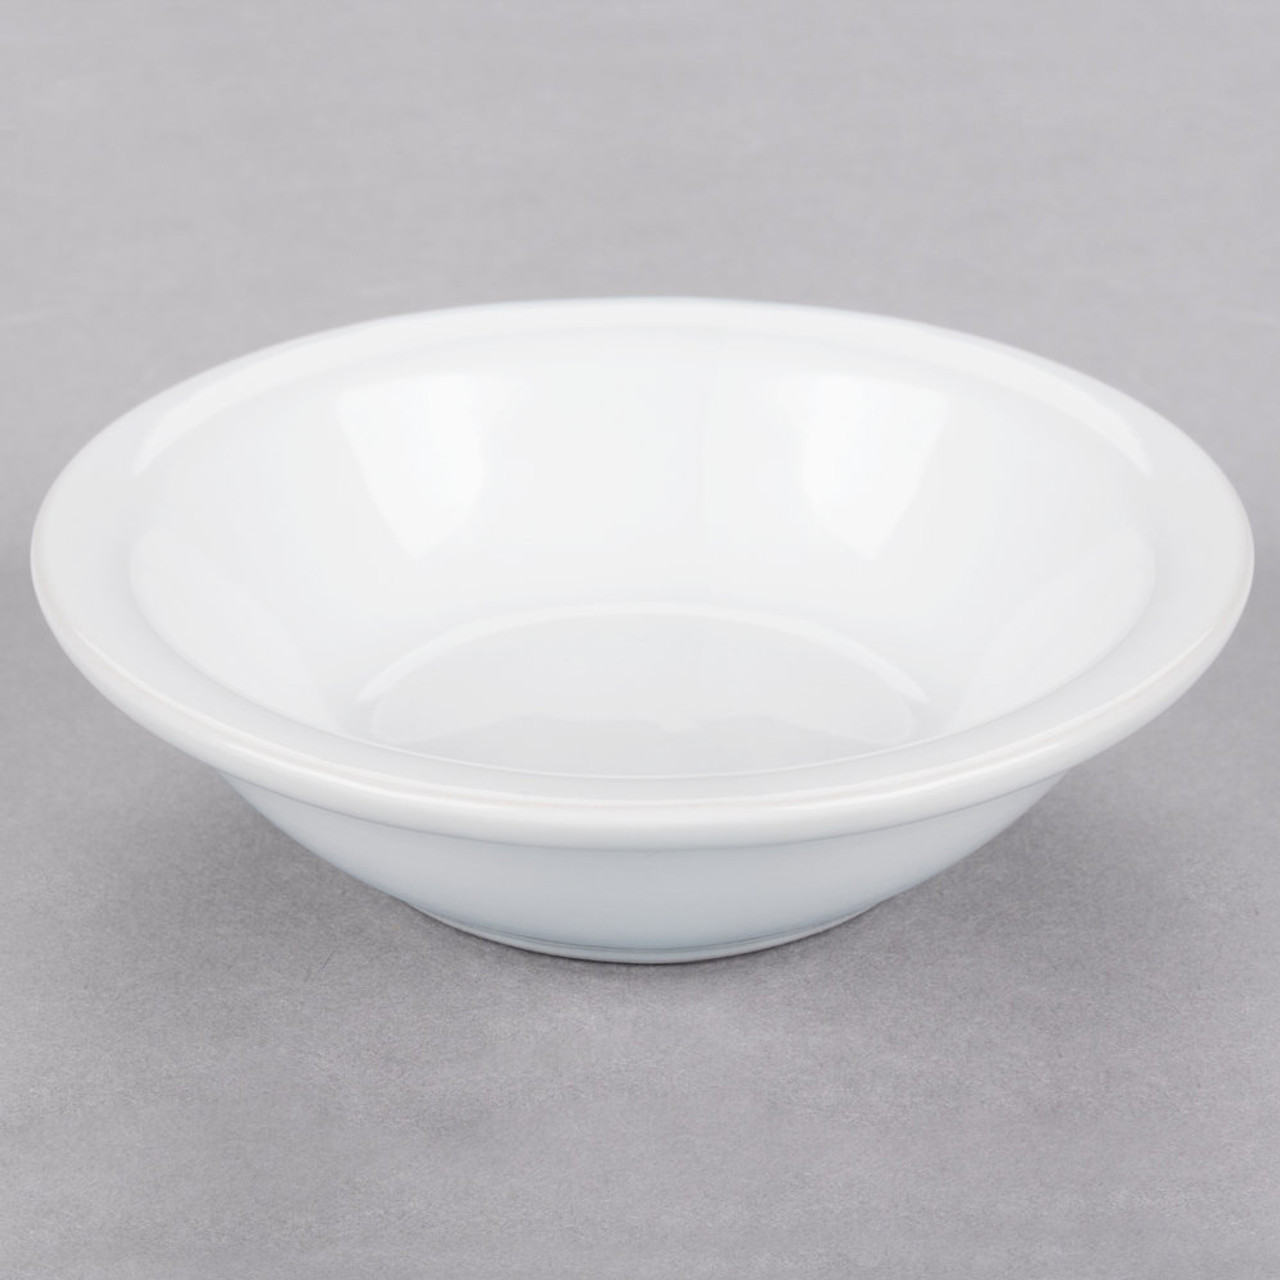 Bright White Rolled Edge China Fruit Bowl / Monkey Dish - 36/Case-3.5 oz. 